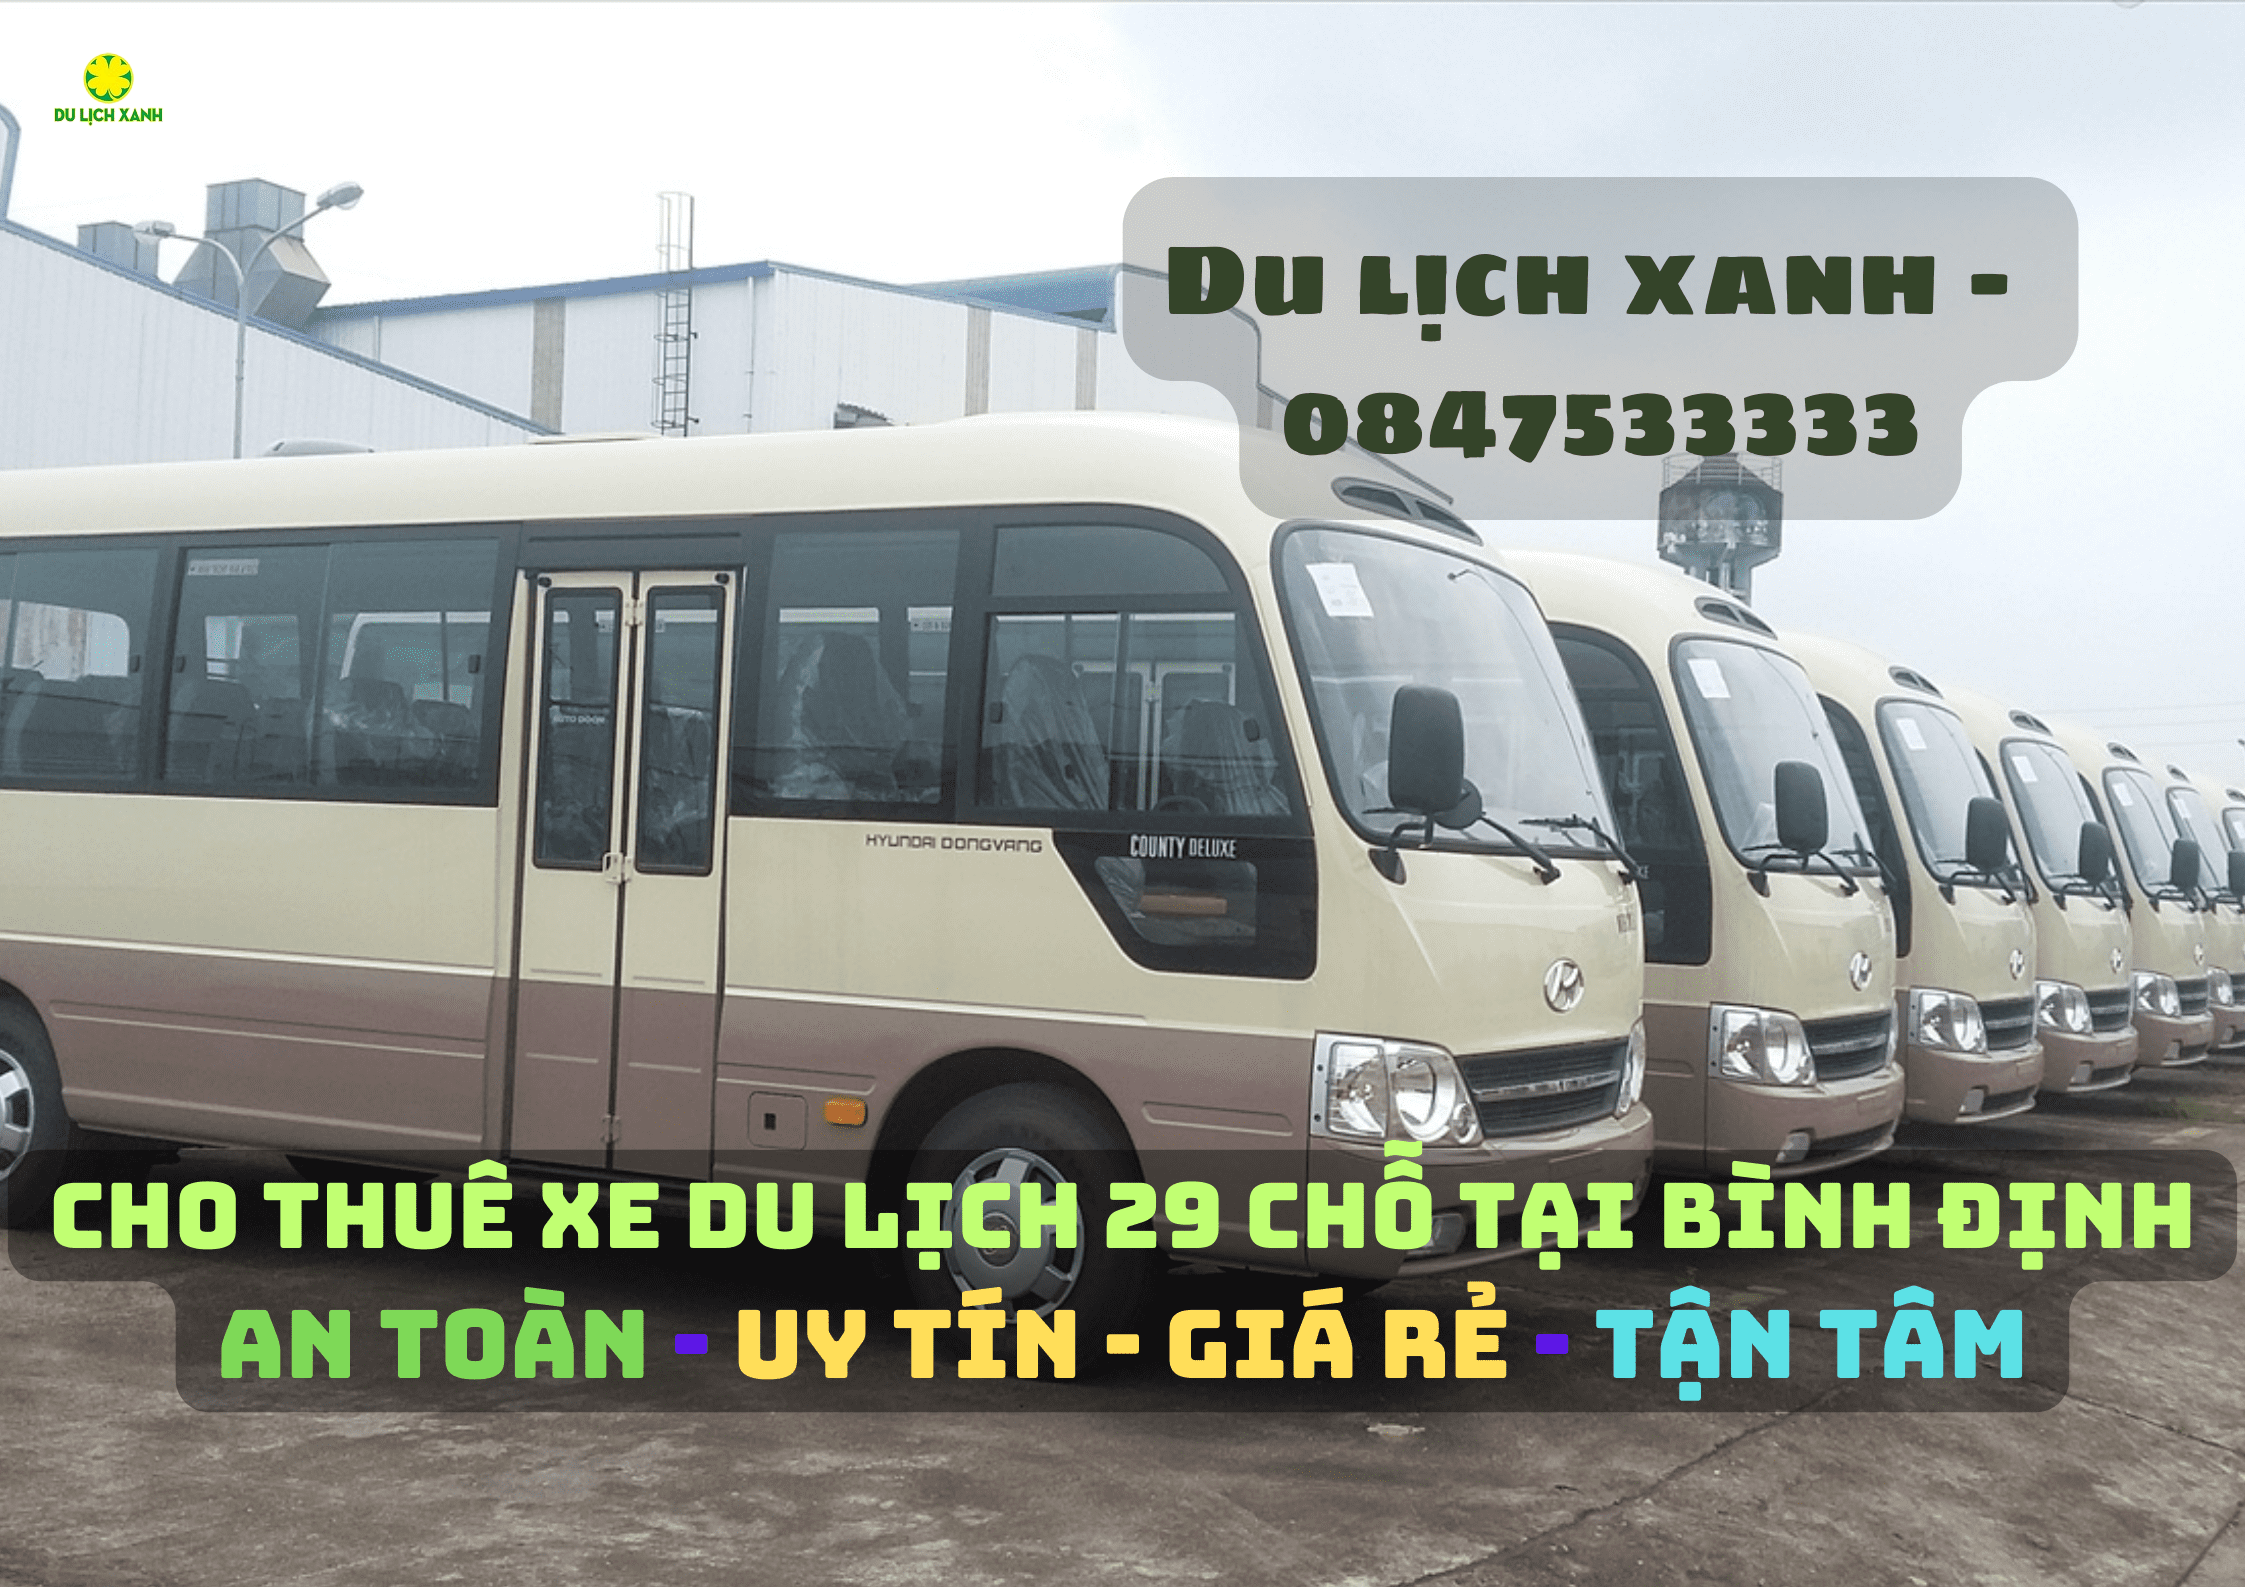 Dịch vụ cho thuê xe du lịch 29 chỗ tại Bình Định